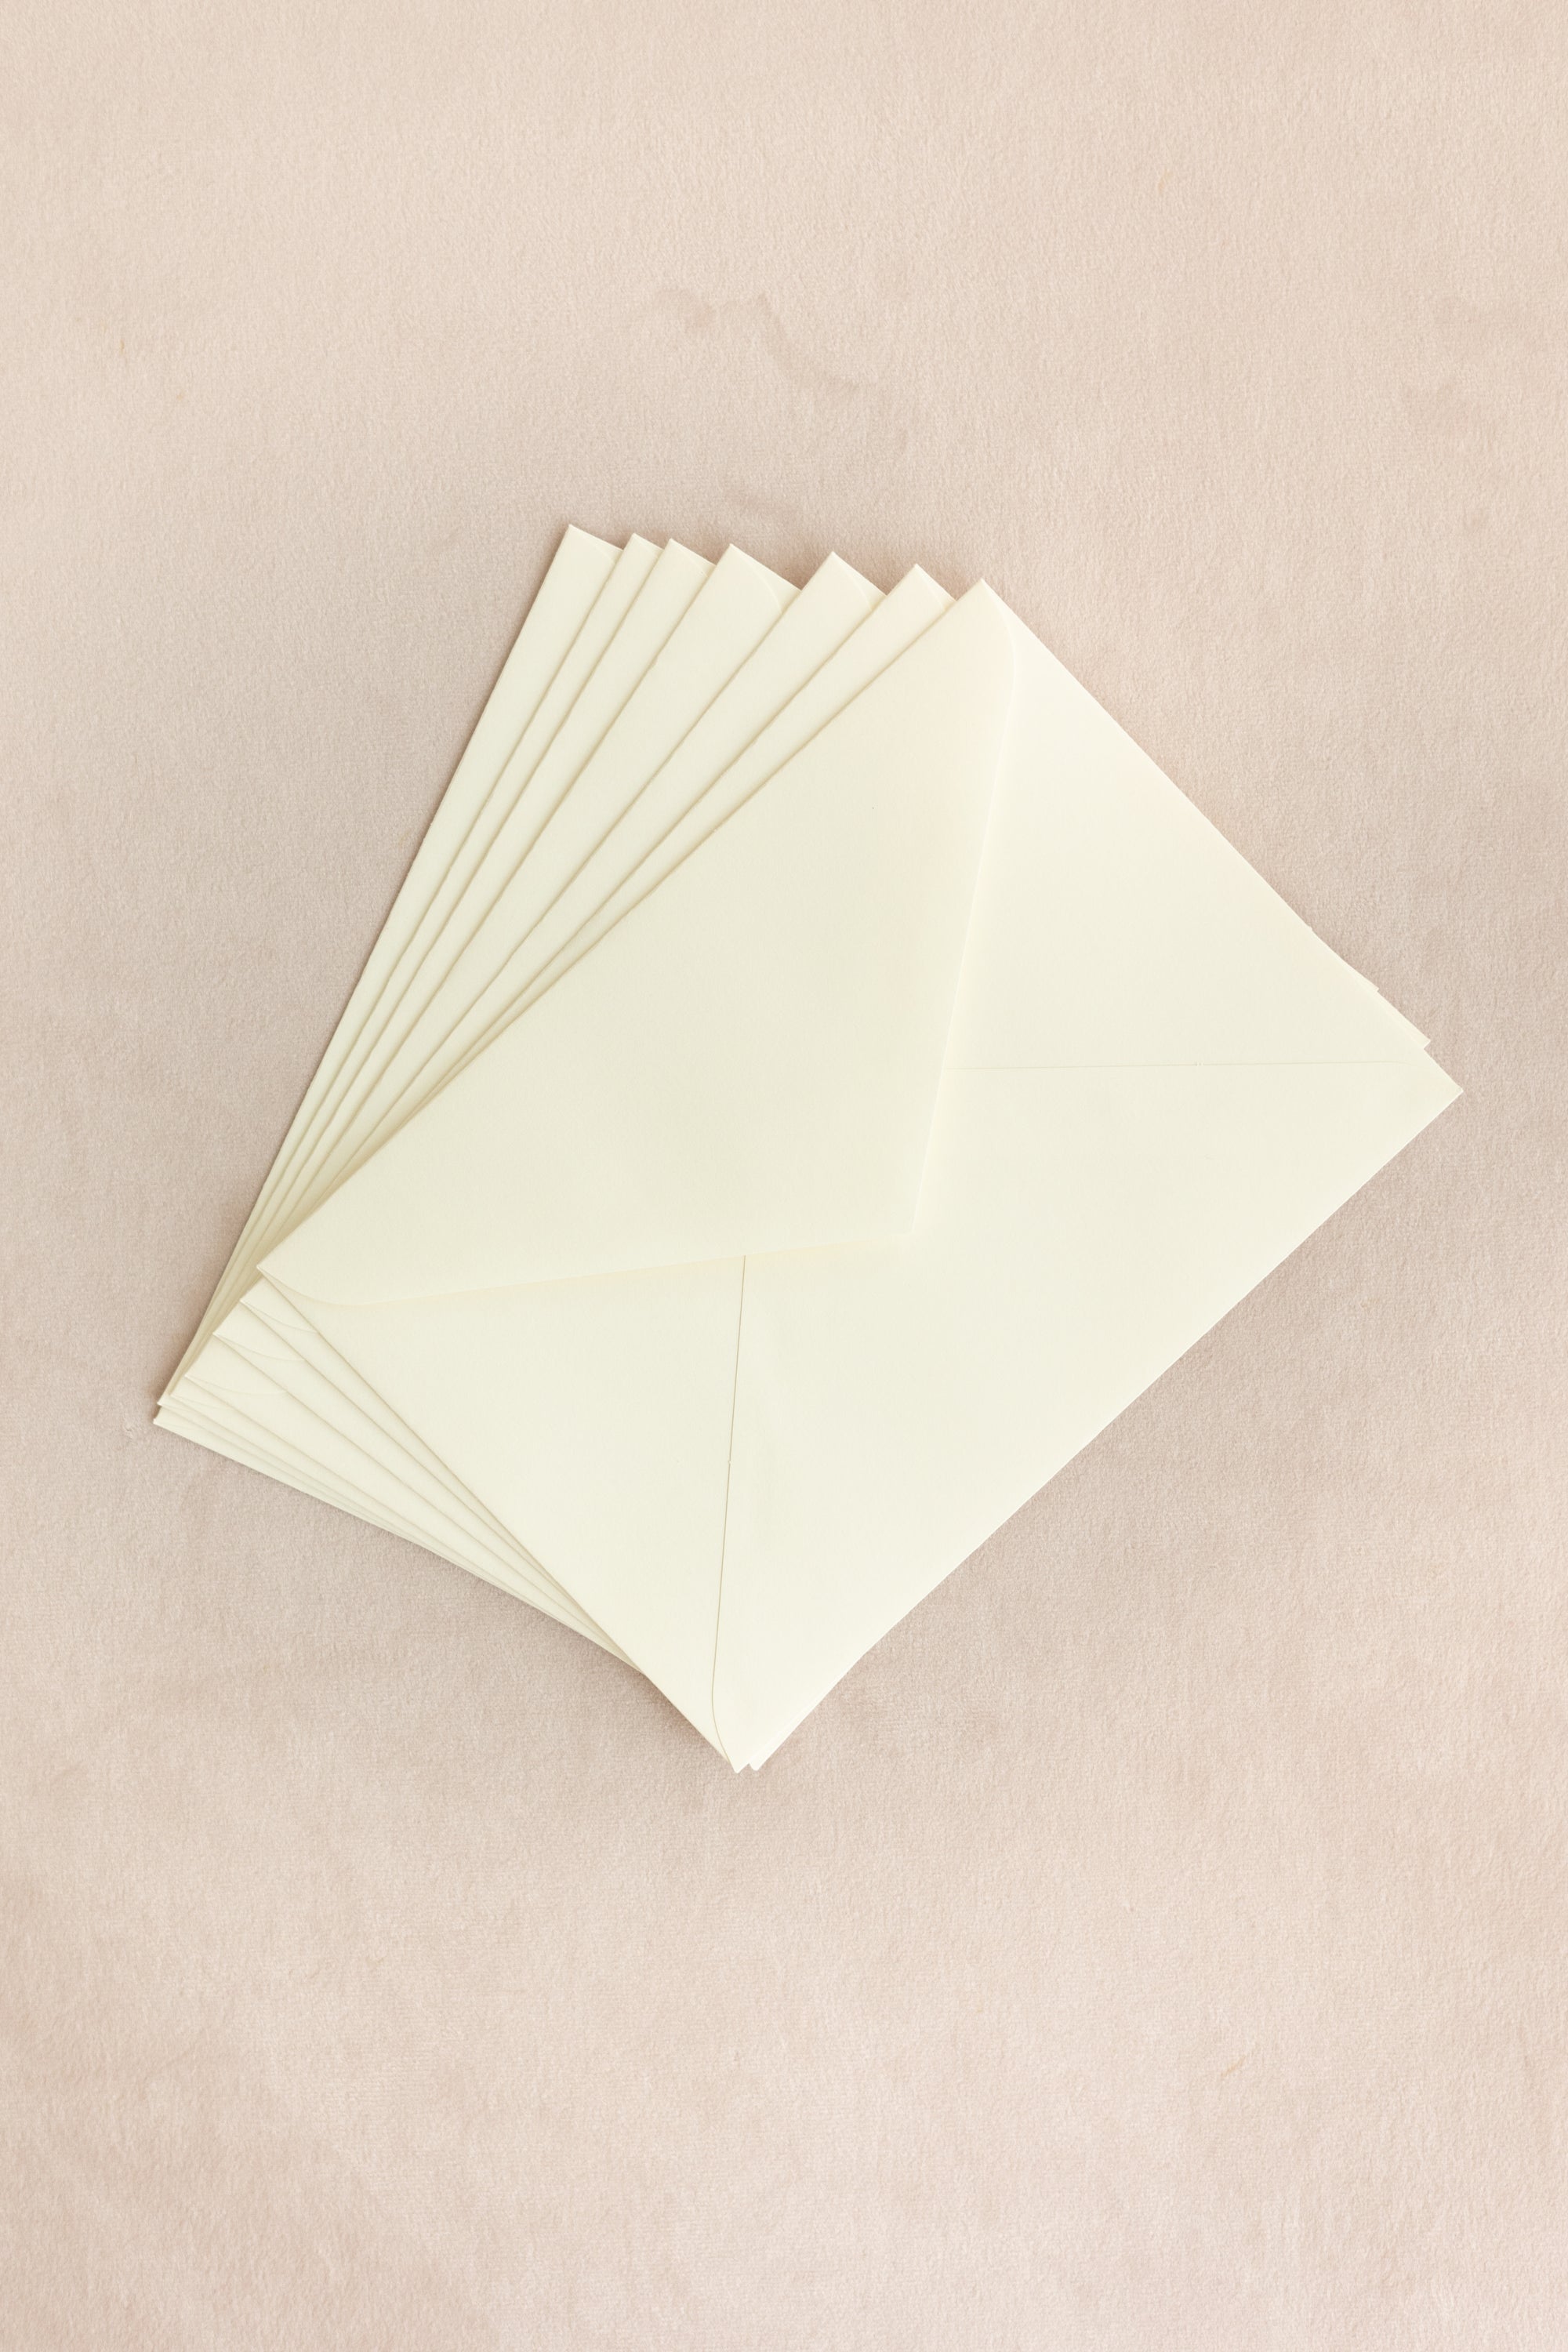 Silk Velvet Greeting Card【Rounded Rectangle】